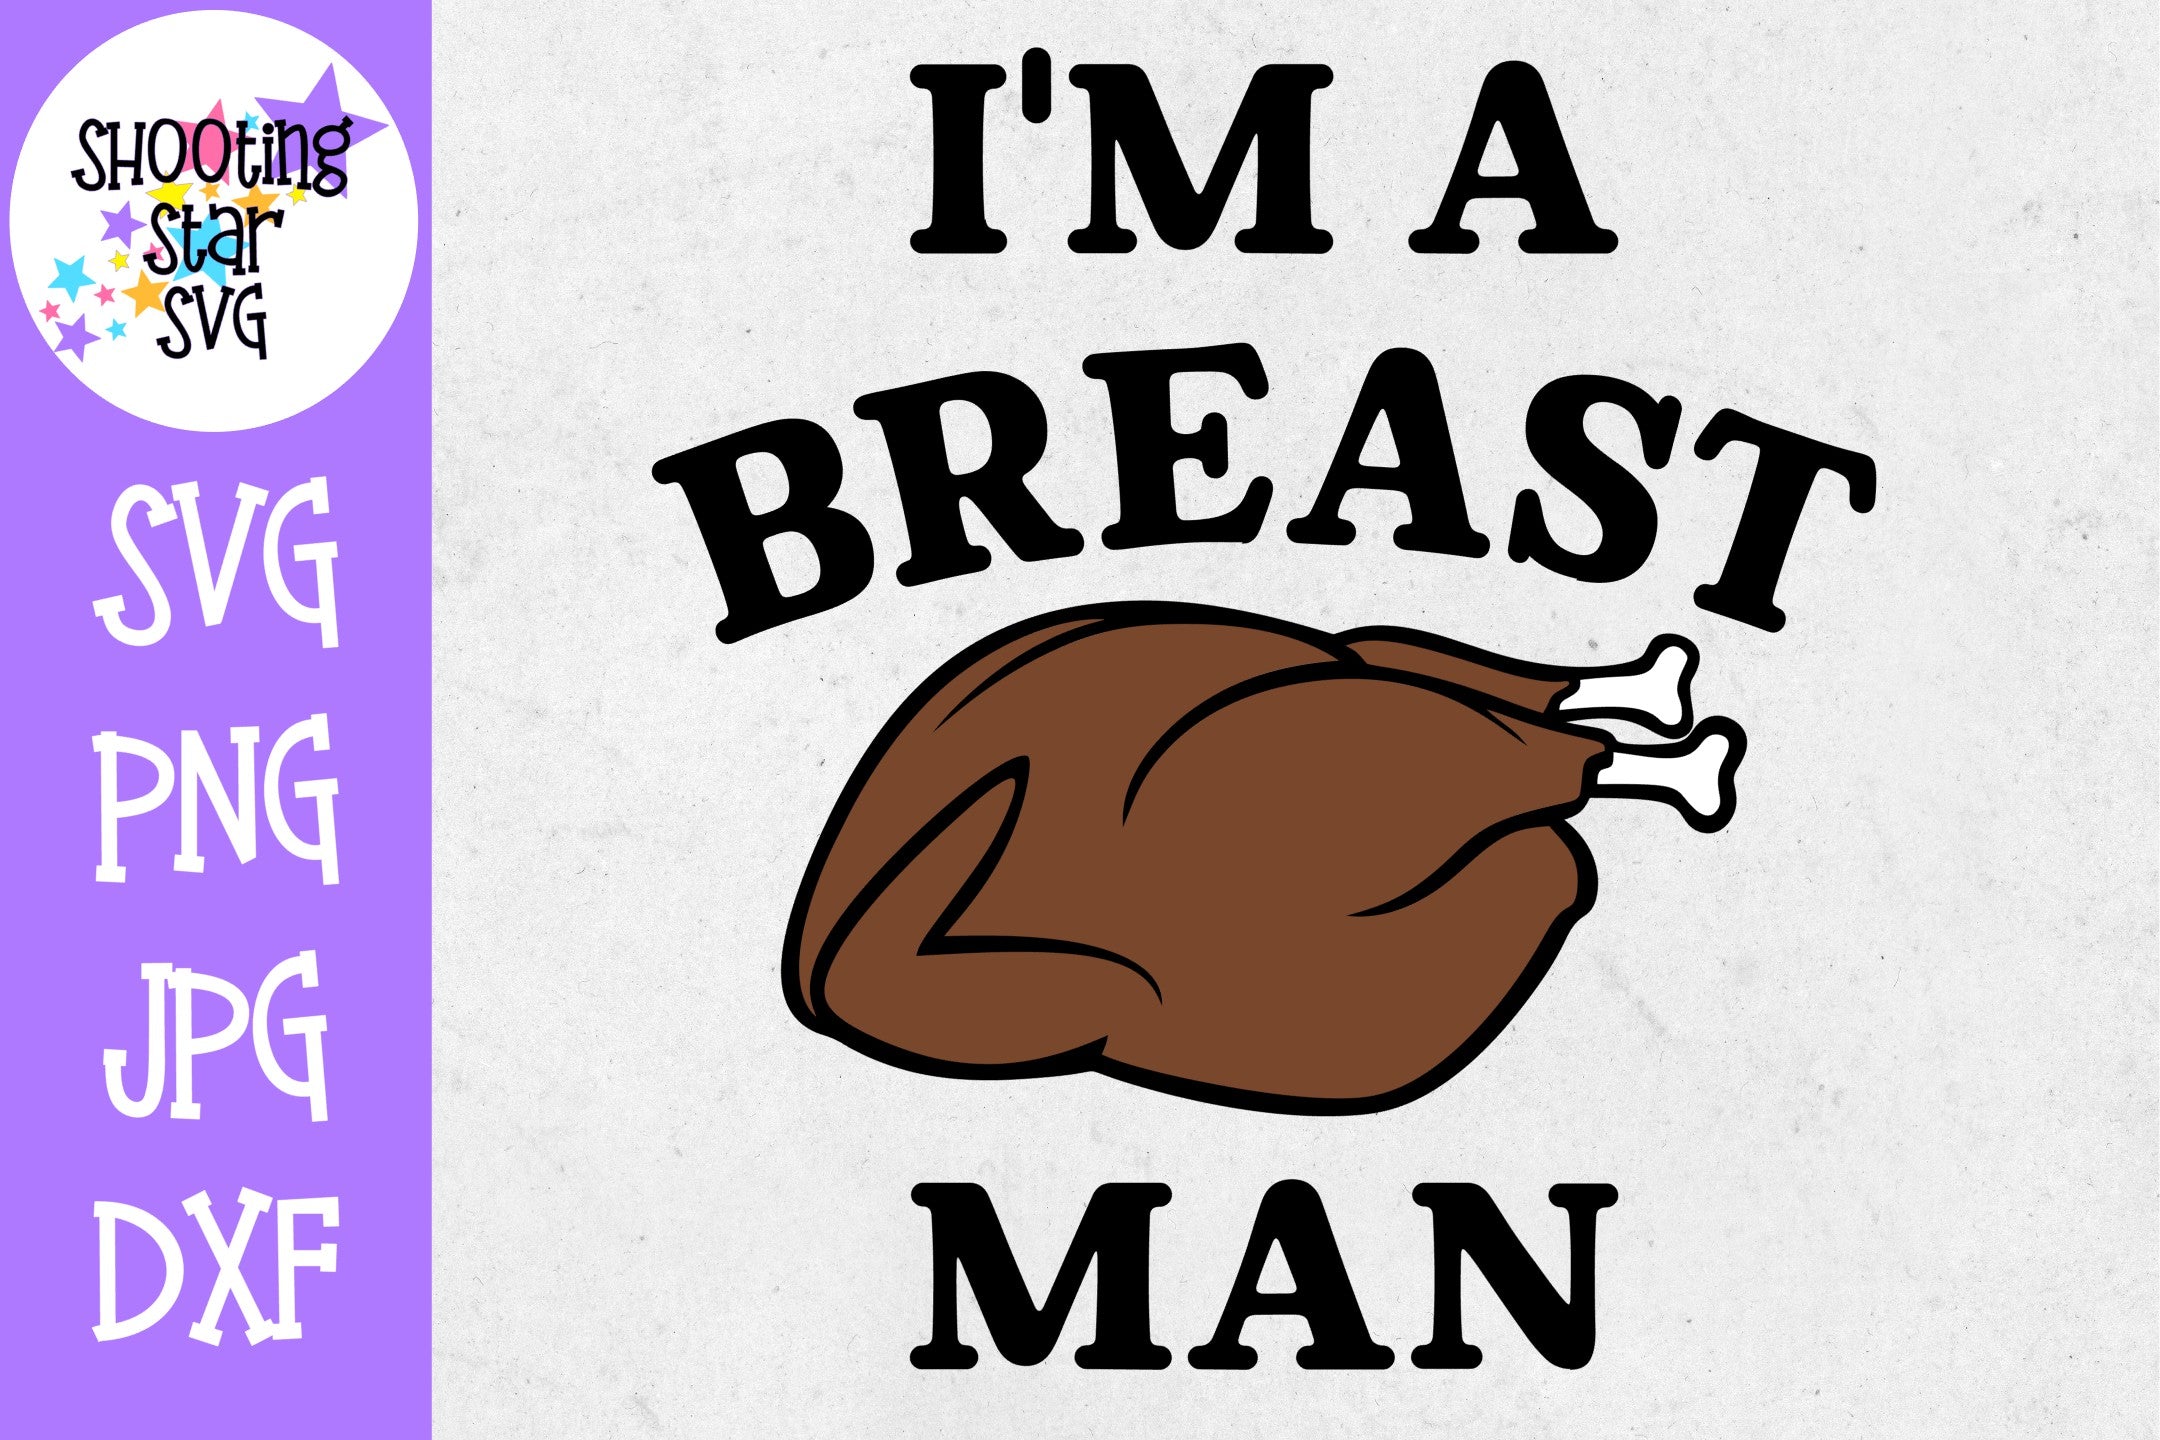 I'm a Breast Man SVG - Funny Turkey SVG - Thanksgiving SVG